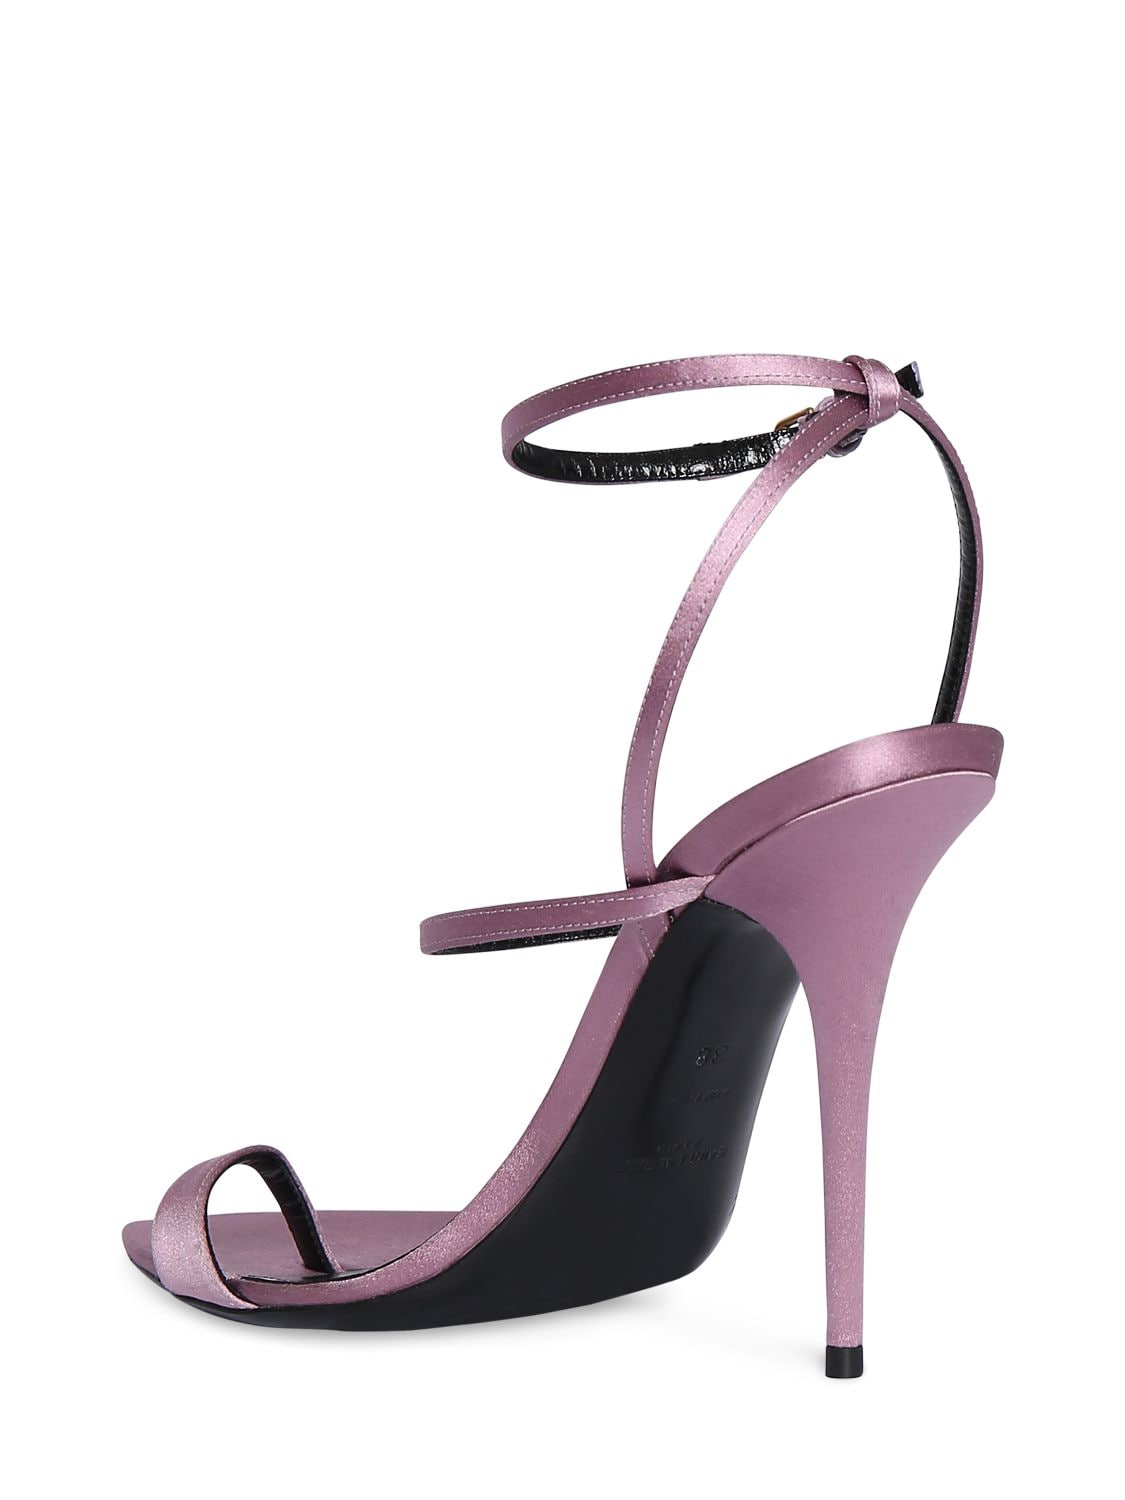 Shop Saint Laurent 110mm Dive Satin Sandals In Ancient Pink